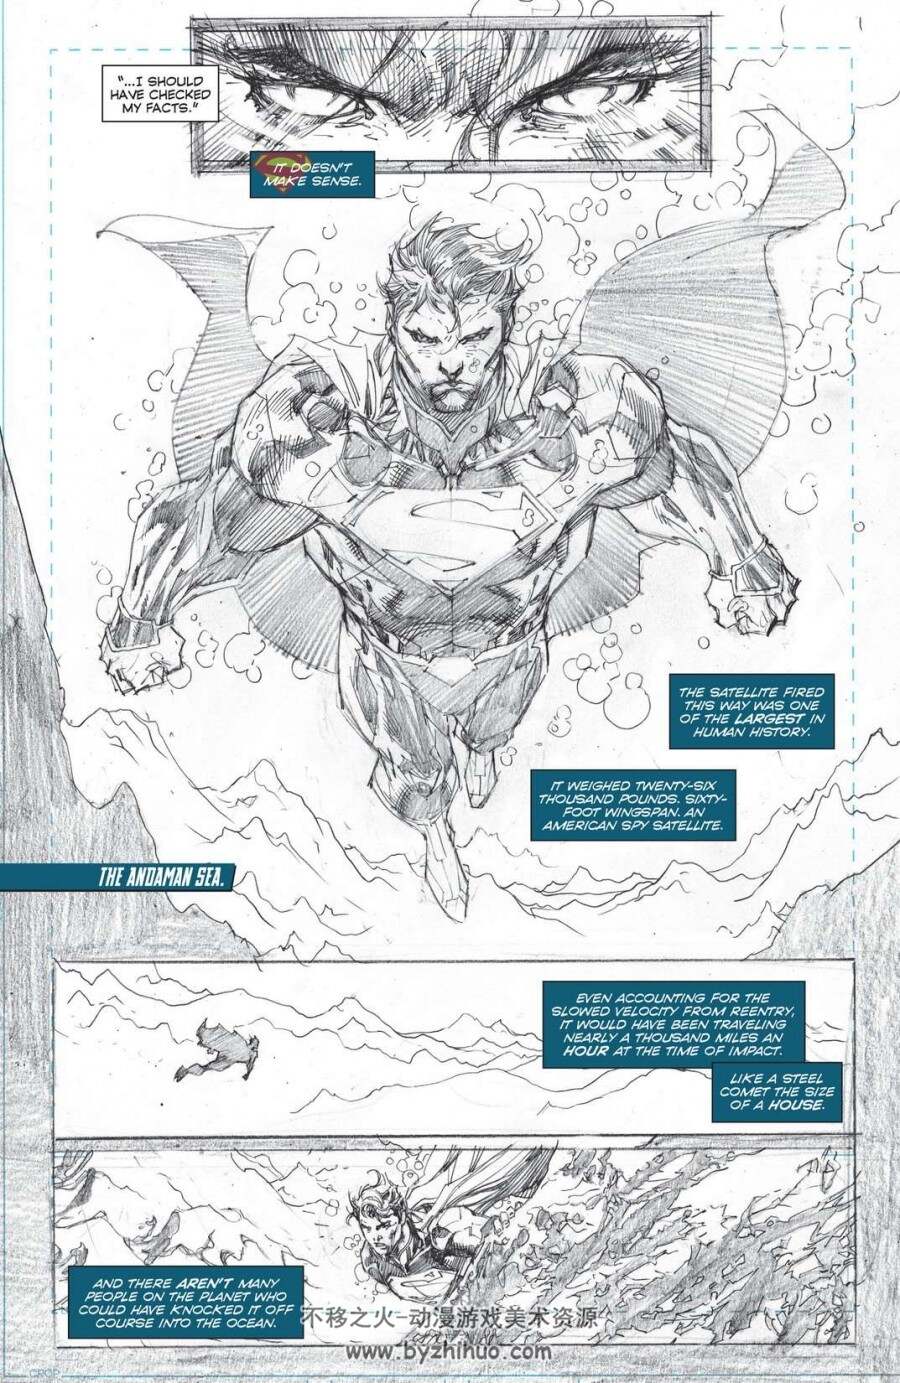 漫威-DC 漫画合集  内战2  复仇者联盟 钢铁侠 蜘蛛侠 死侍 超人 蝙蝠侠  等